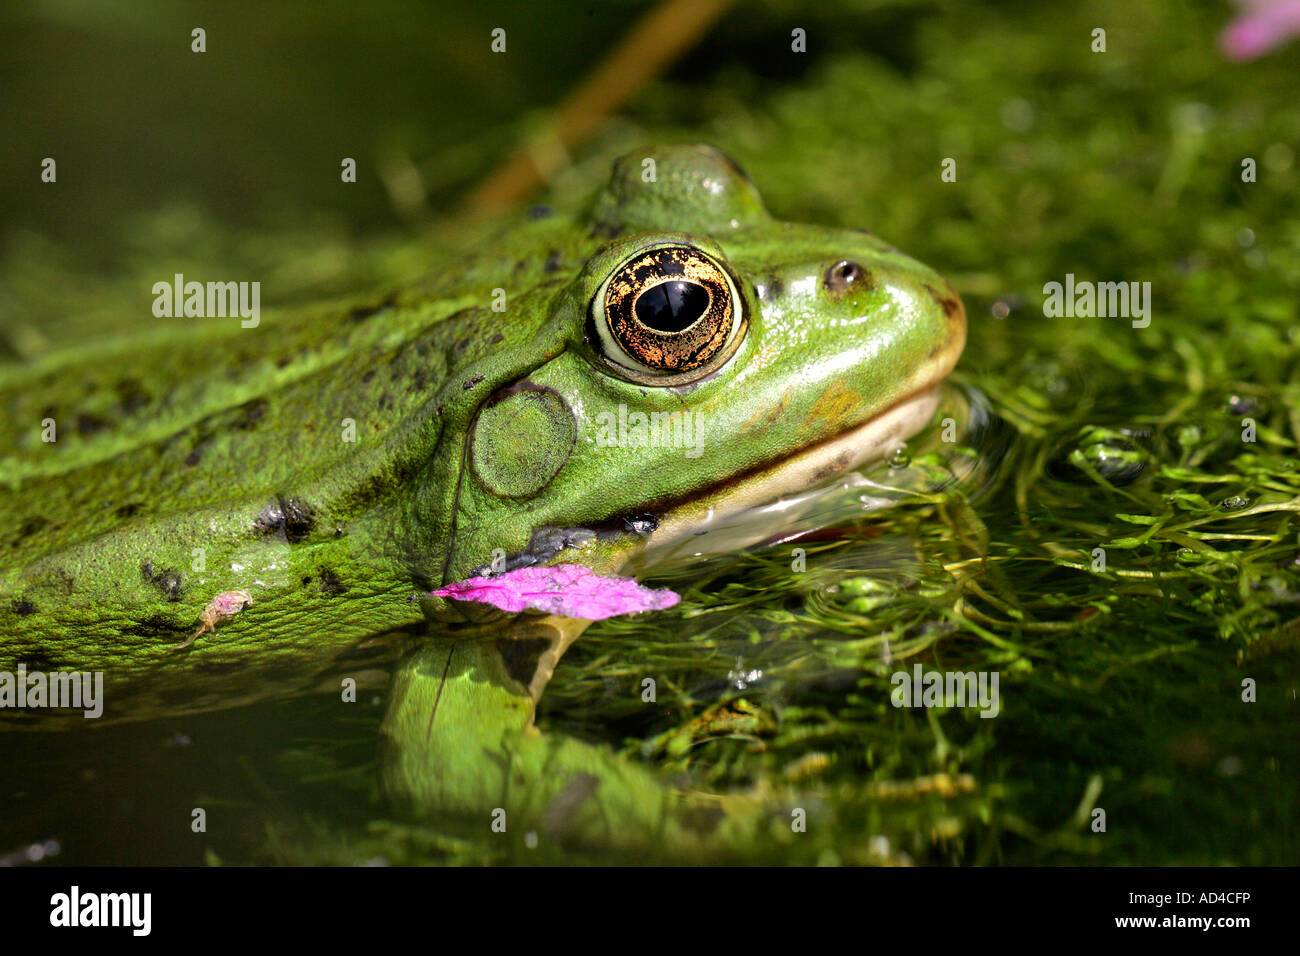 Unione rana verde nuotare in un laghetto in giardino (Rana esculenta) Foto Stock